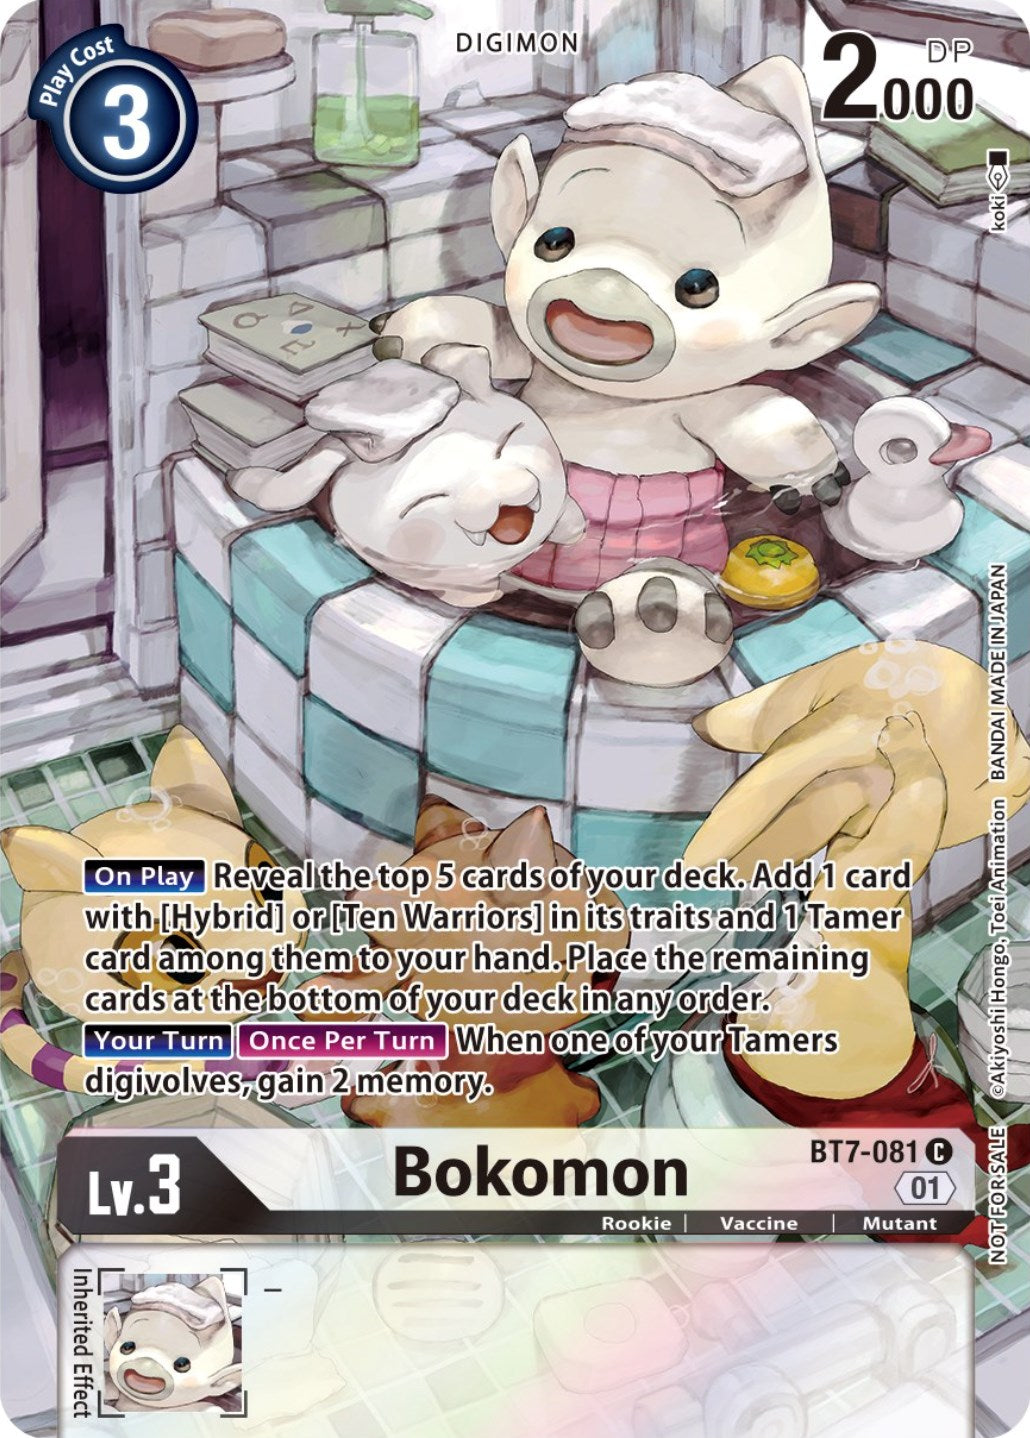 Bokomon [BT7-081] (2nd Anniversary Frontier Card) [Next Adventure Promos] | Devastation Store